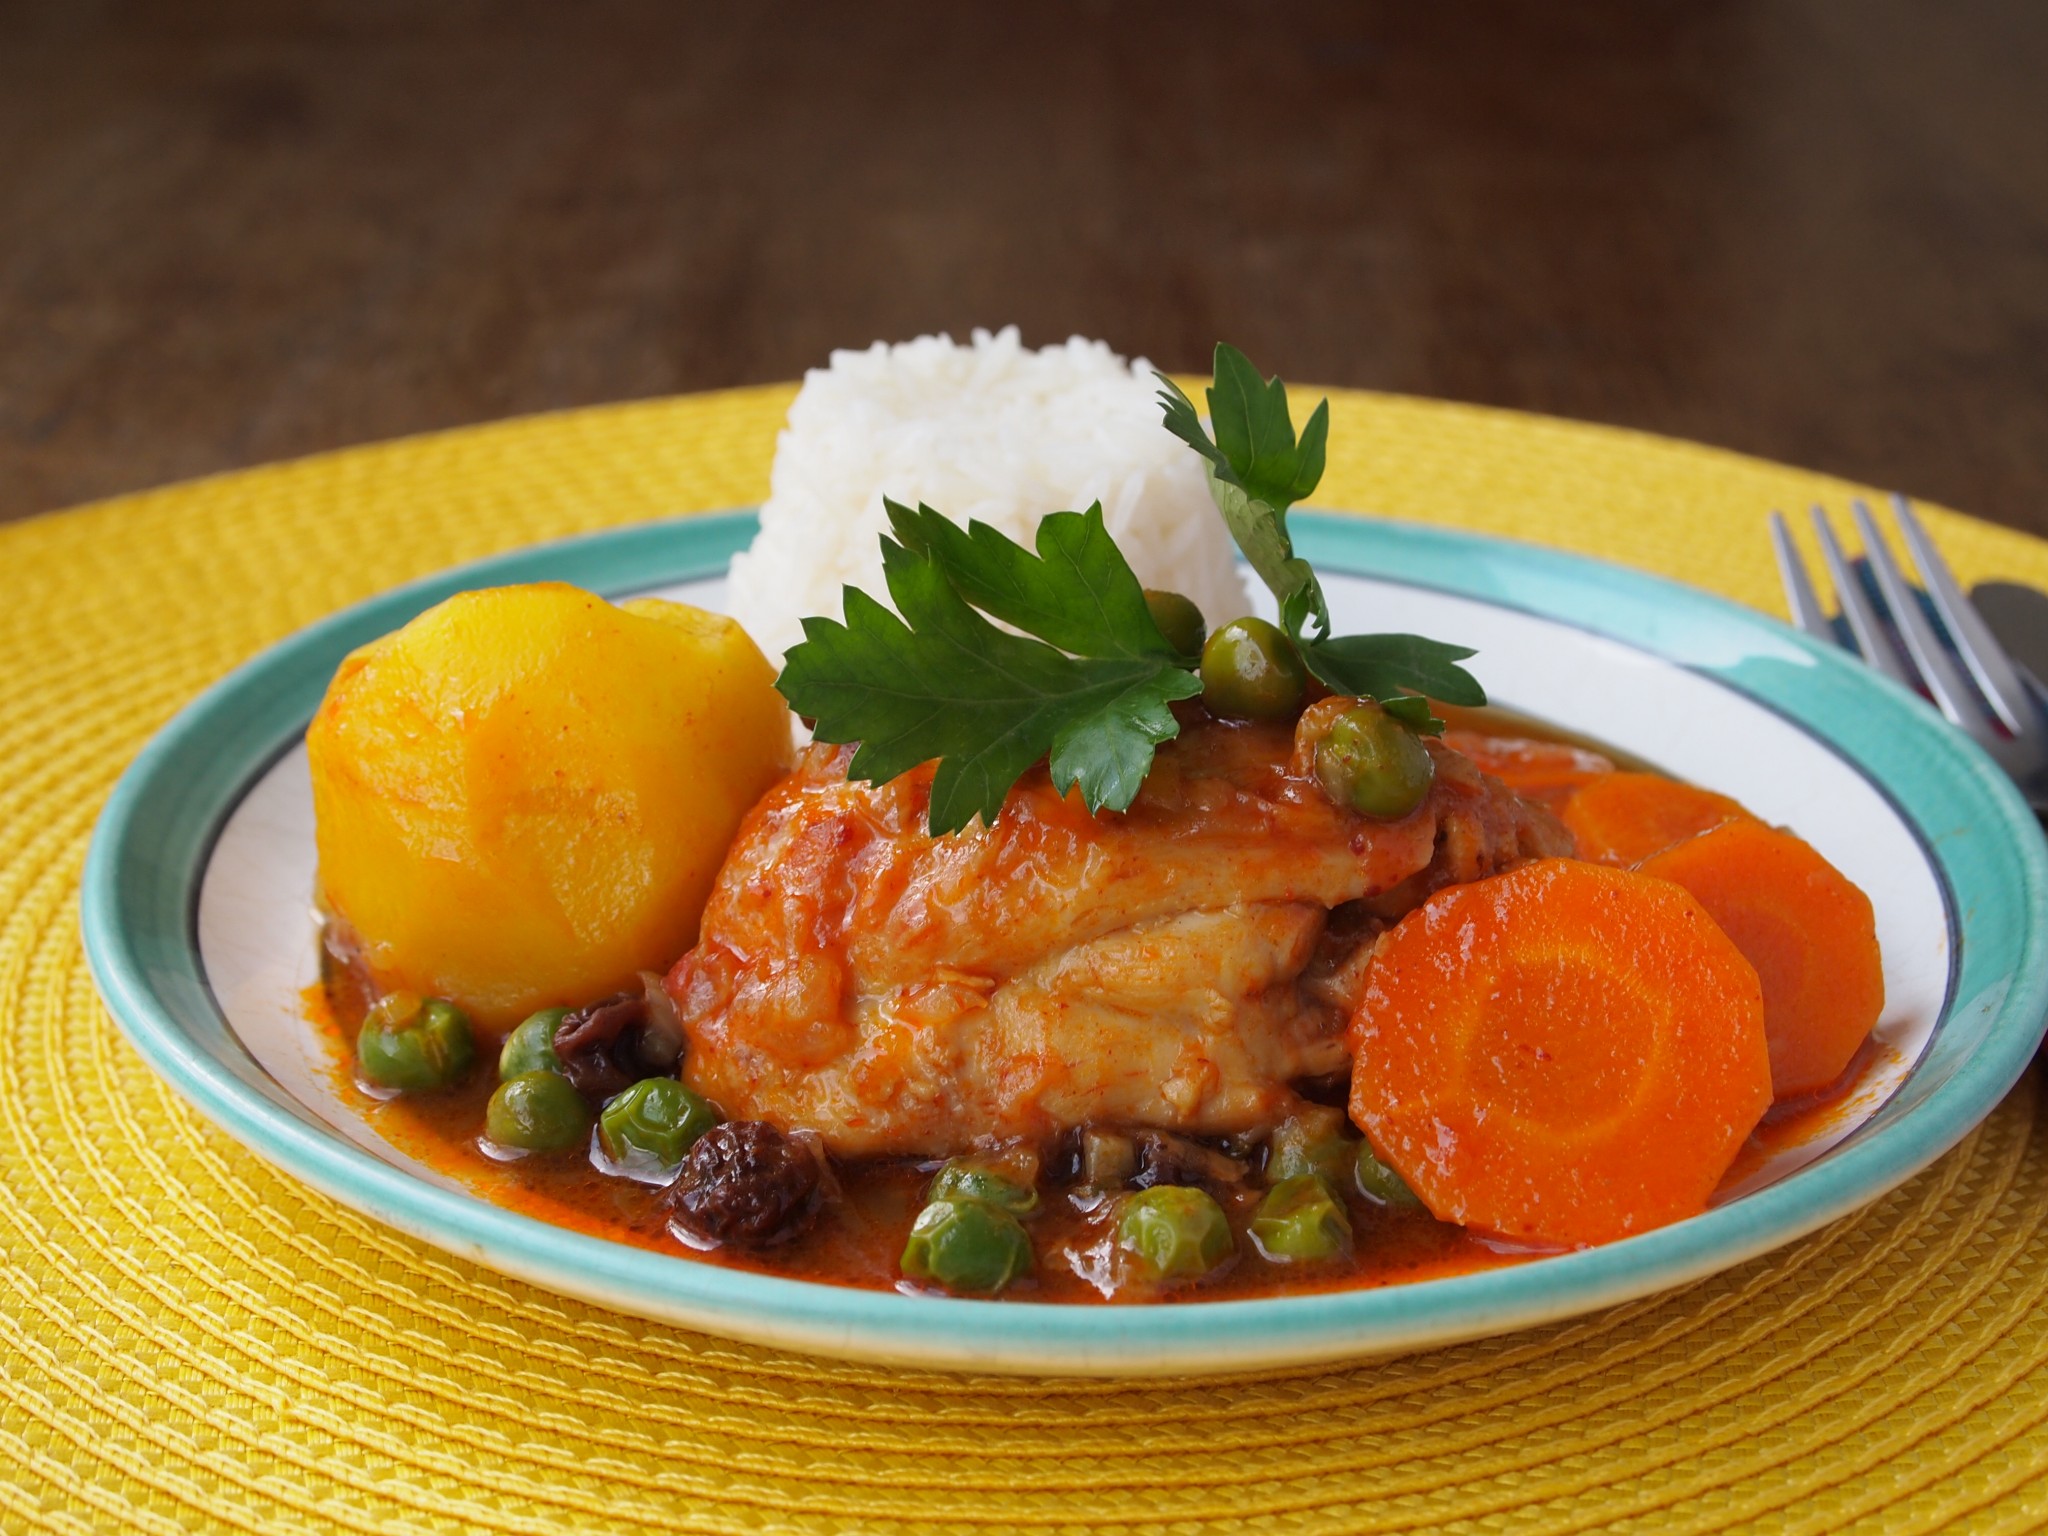 Estofado de pollo (Chicken stew) – The magic of home cooking | PERU DELIGHTS